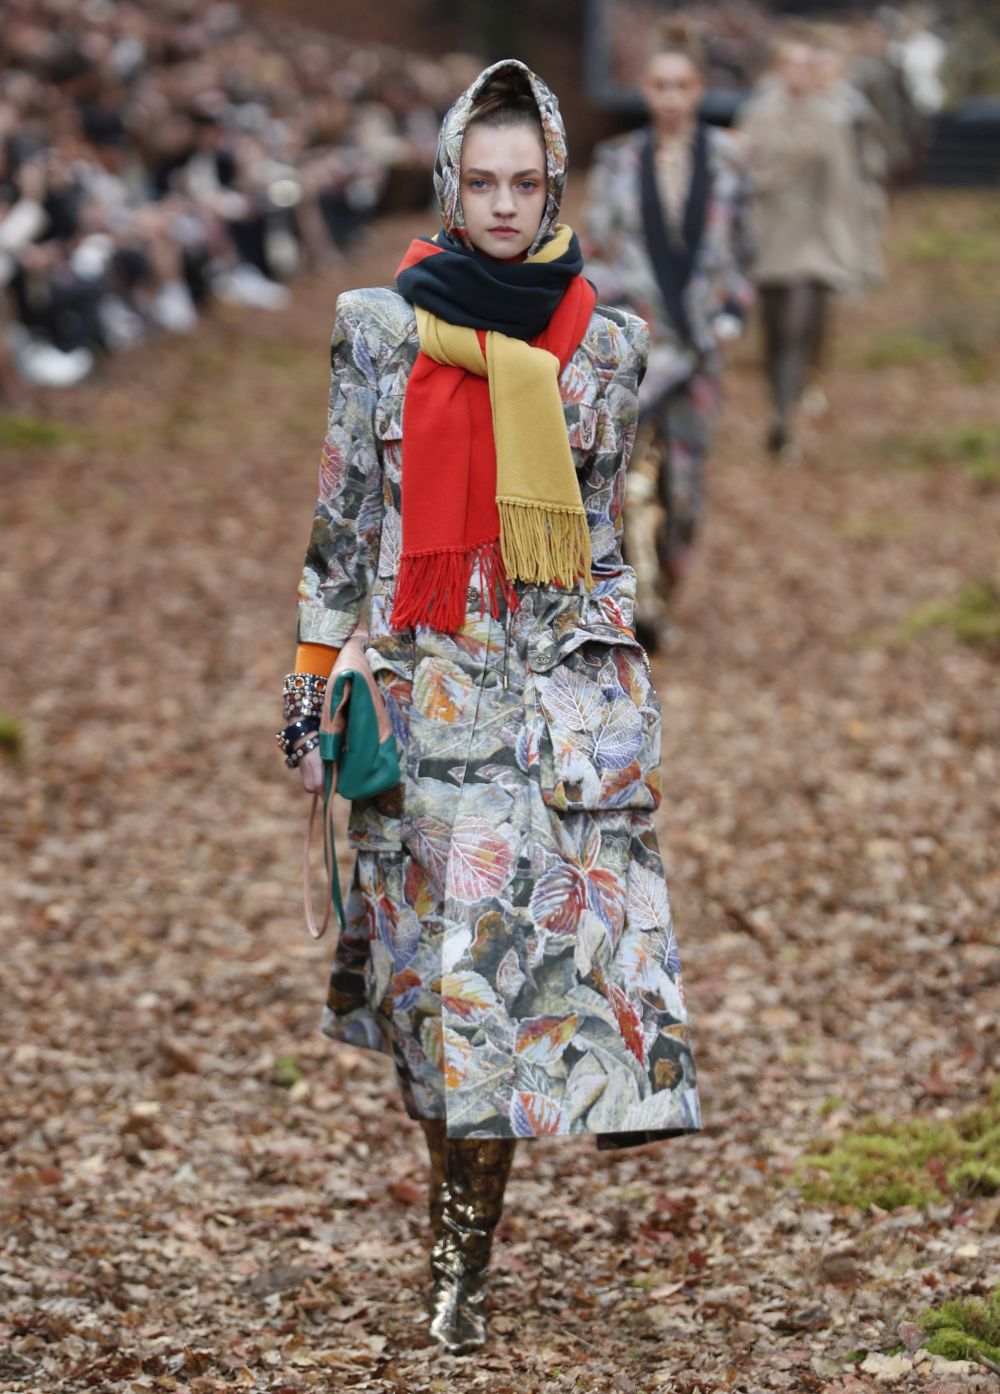 <strong>Карл Лагерфелд </strong>облече манекенките в<strong> дрехи с щамповани листа </strong>за ревюто, което<strong> възпя есента насред мъглива гора в Гран пале в Париж.</strong><br />
 <br />
В колекцията есен/зима, представена през последния ден на<strong> Парижката седмица на модата</strong>, има някои доста непрактични облекла за разходка сред природата, като златисти ботушки или черната рокличка. Престижната френска модна къща обаче предложи и някои удобни и топли модели - от ватирани панталони и кожени пончо до палта с пера по маншетите.<br />
 <br />
Характерните костюми от туид през следващата зима ще са с по-дълги тесни поли. Най-впечатляващи бяха палтата - дълги, с щамповани листа в комбинация със синьо и розово, или зелено и оранжево.<br />
 